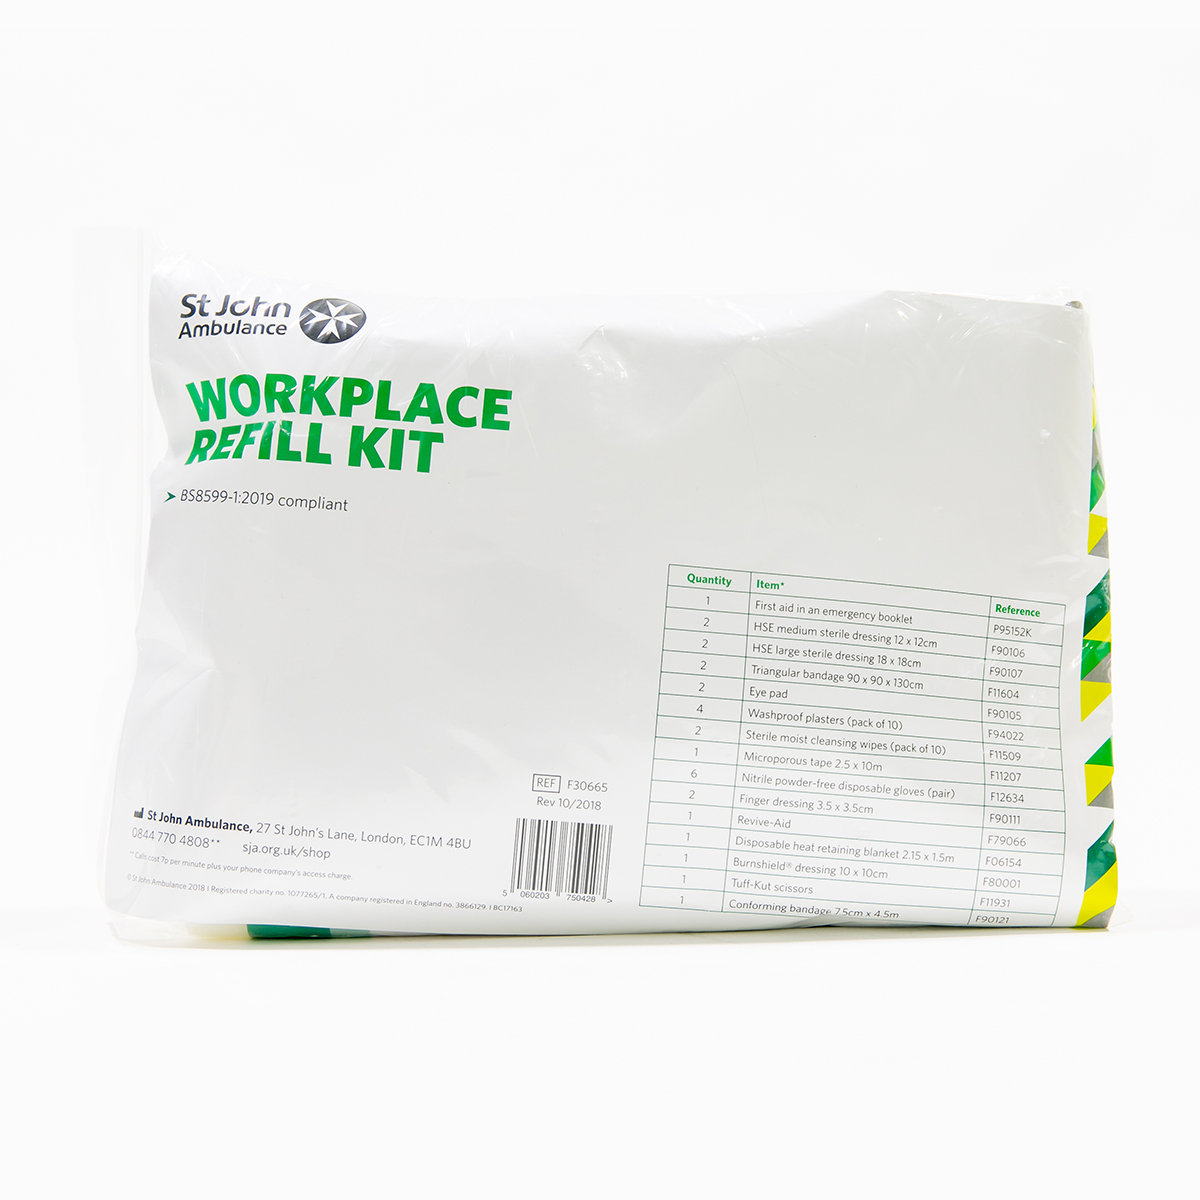 St John Ambulance Workplace Refill First Aid Kit BS 8599-1:2019